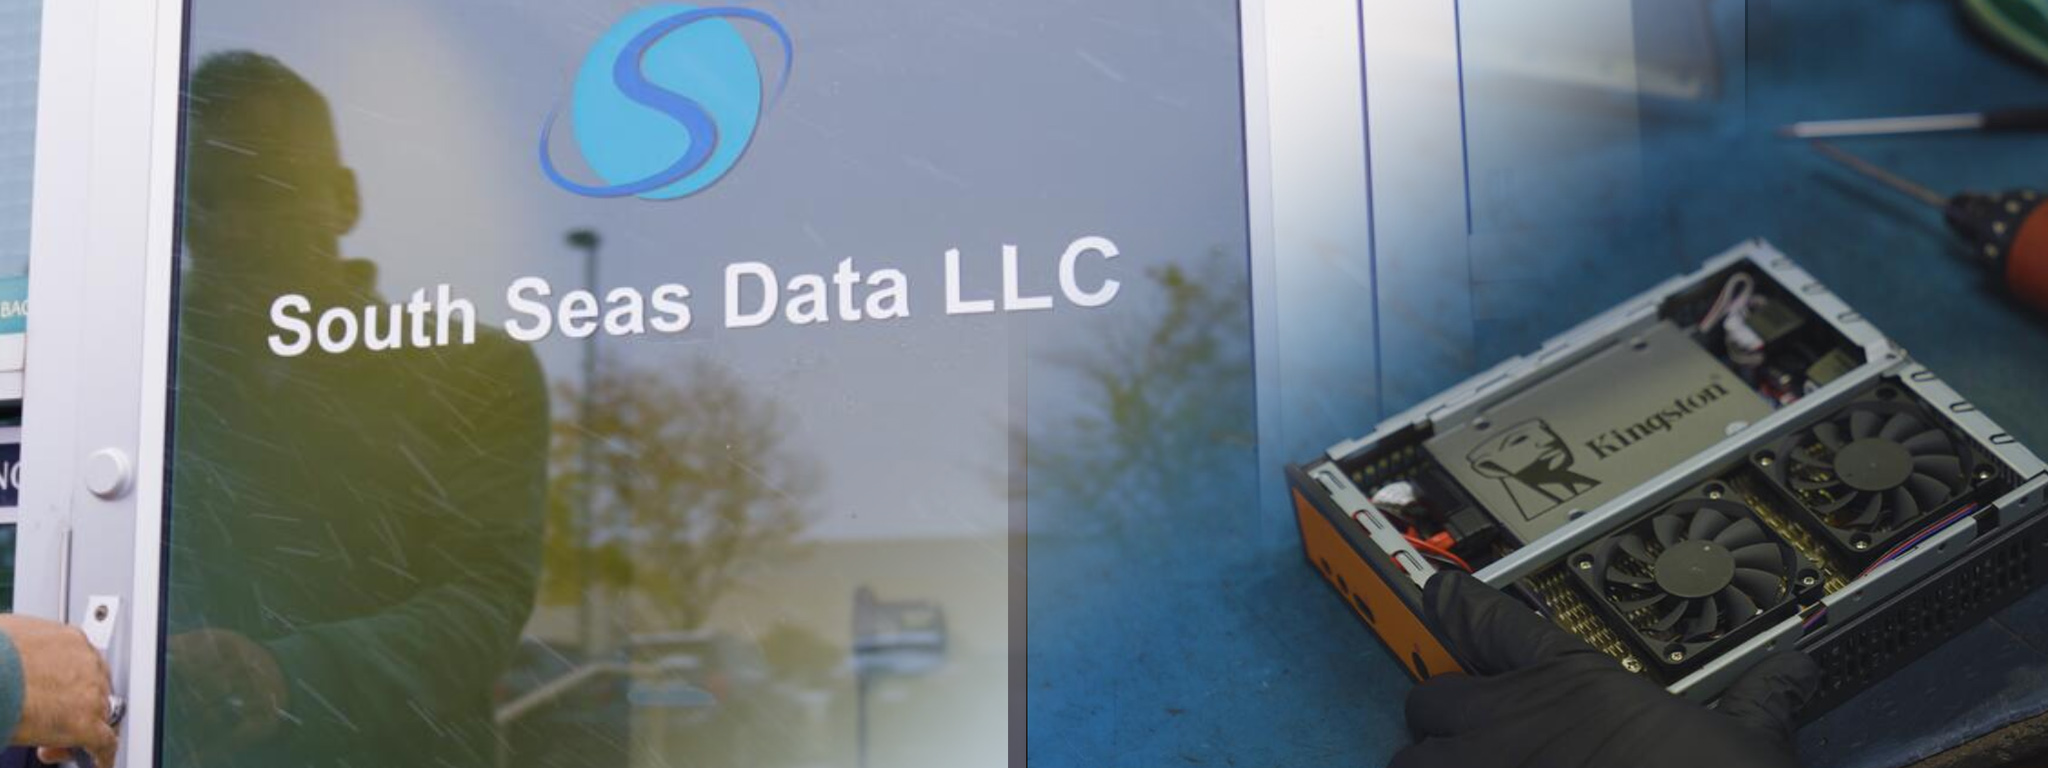 La porte d’entrée du siège de South Seas Data LLC, et l’image superposée d’un système mettant en évidence un SSD Kingston.